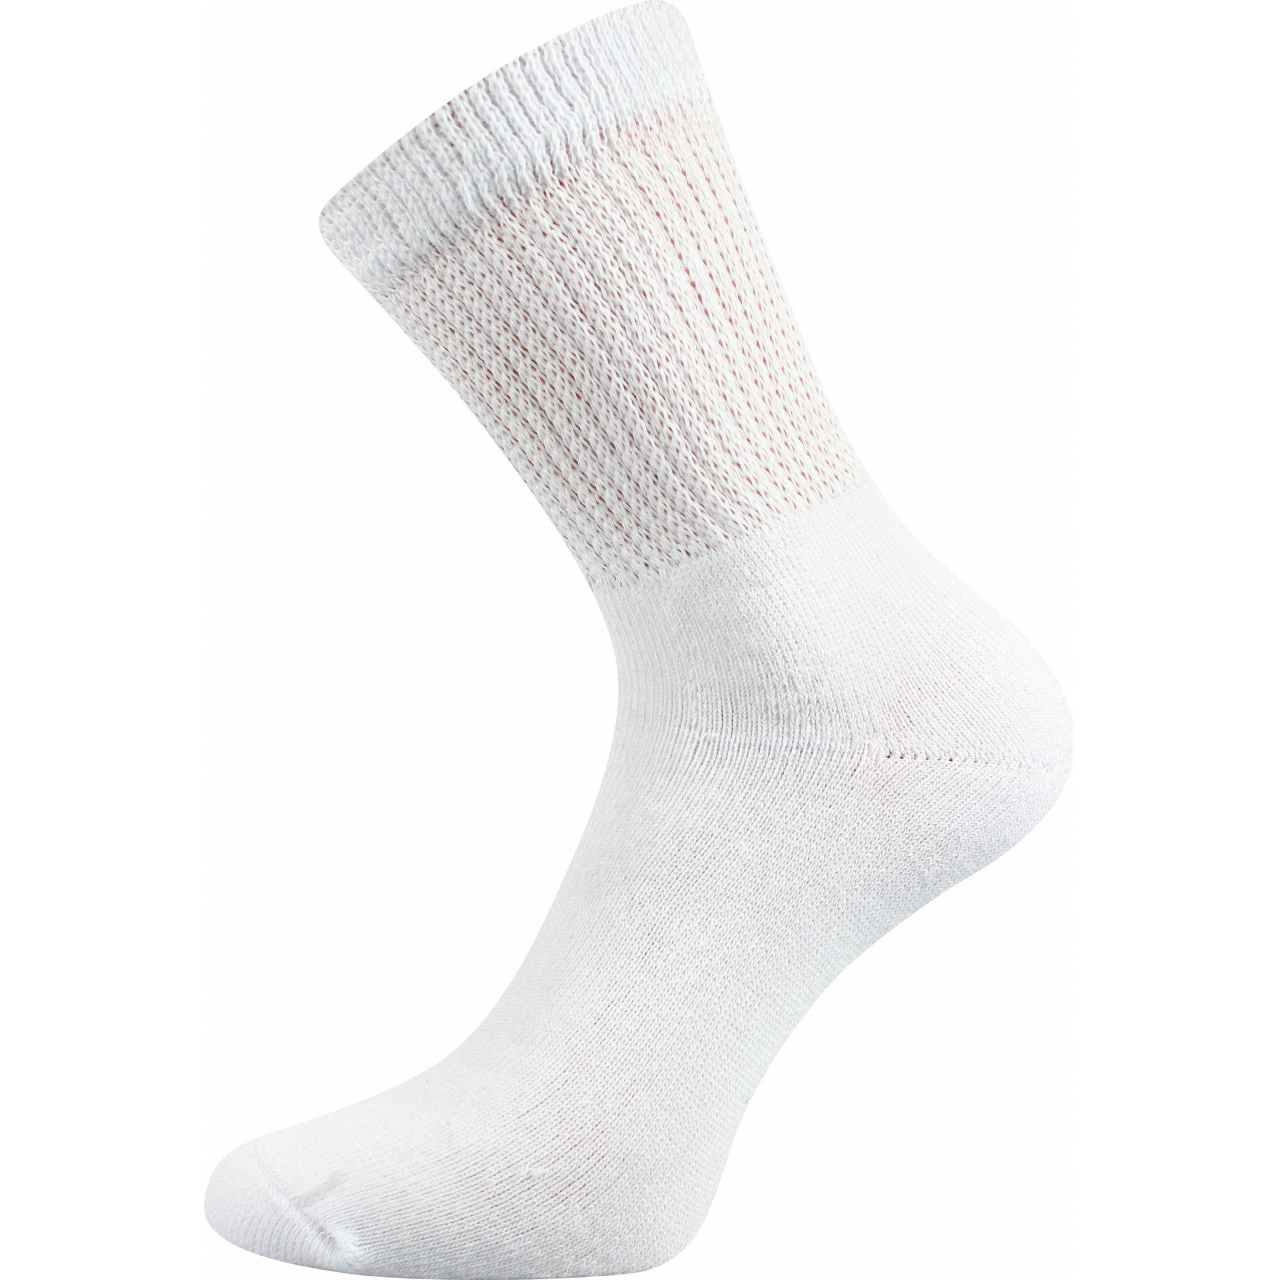 Ponožky trekingové unisex Boma 012-41-39 I - bílé, 35-38